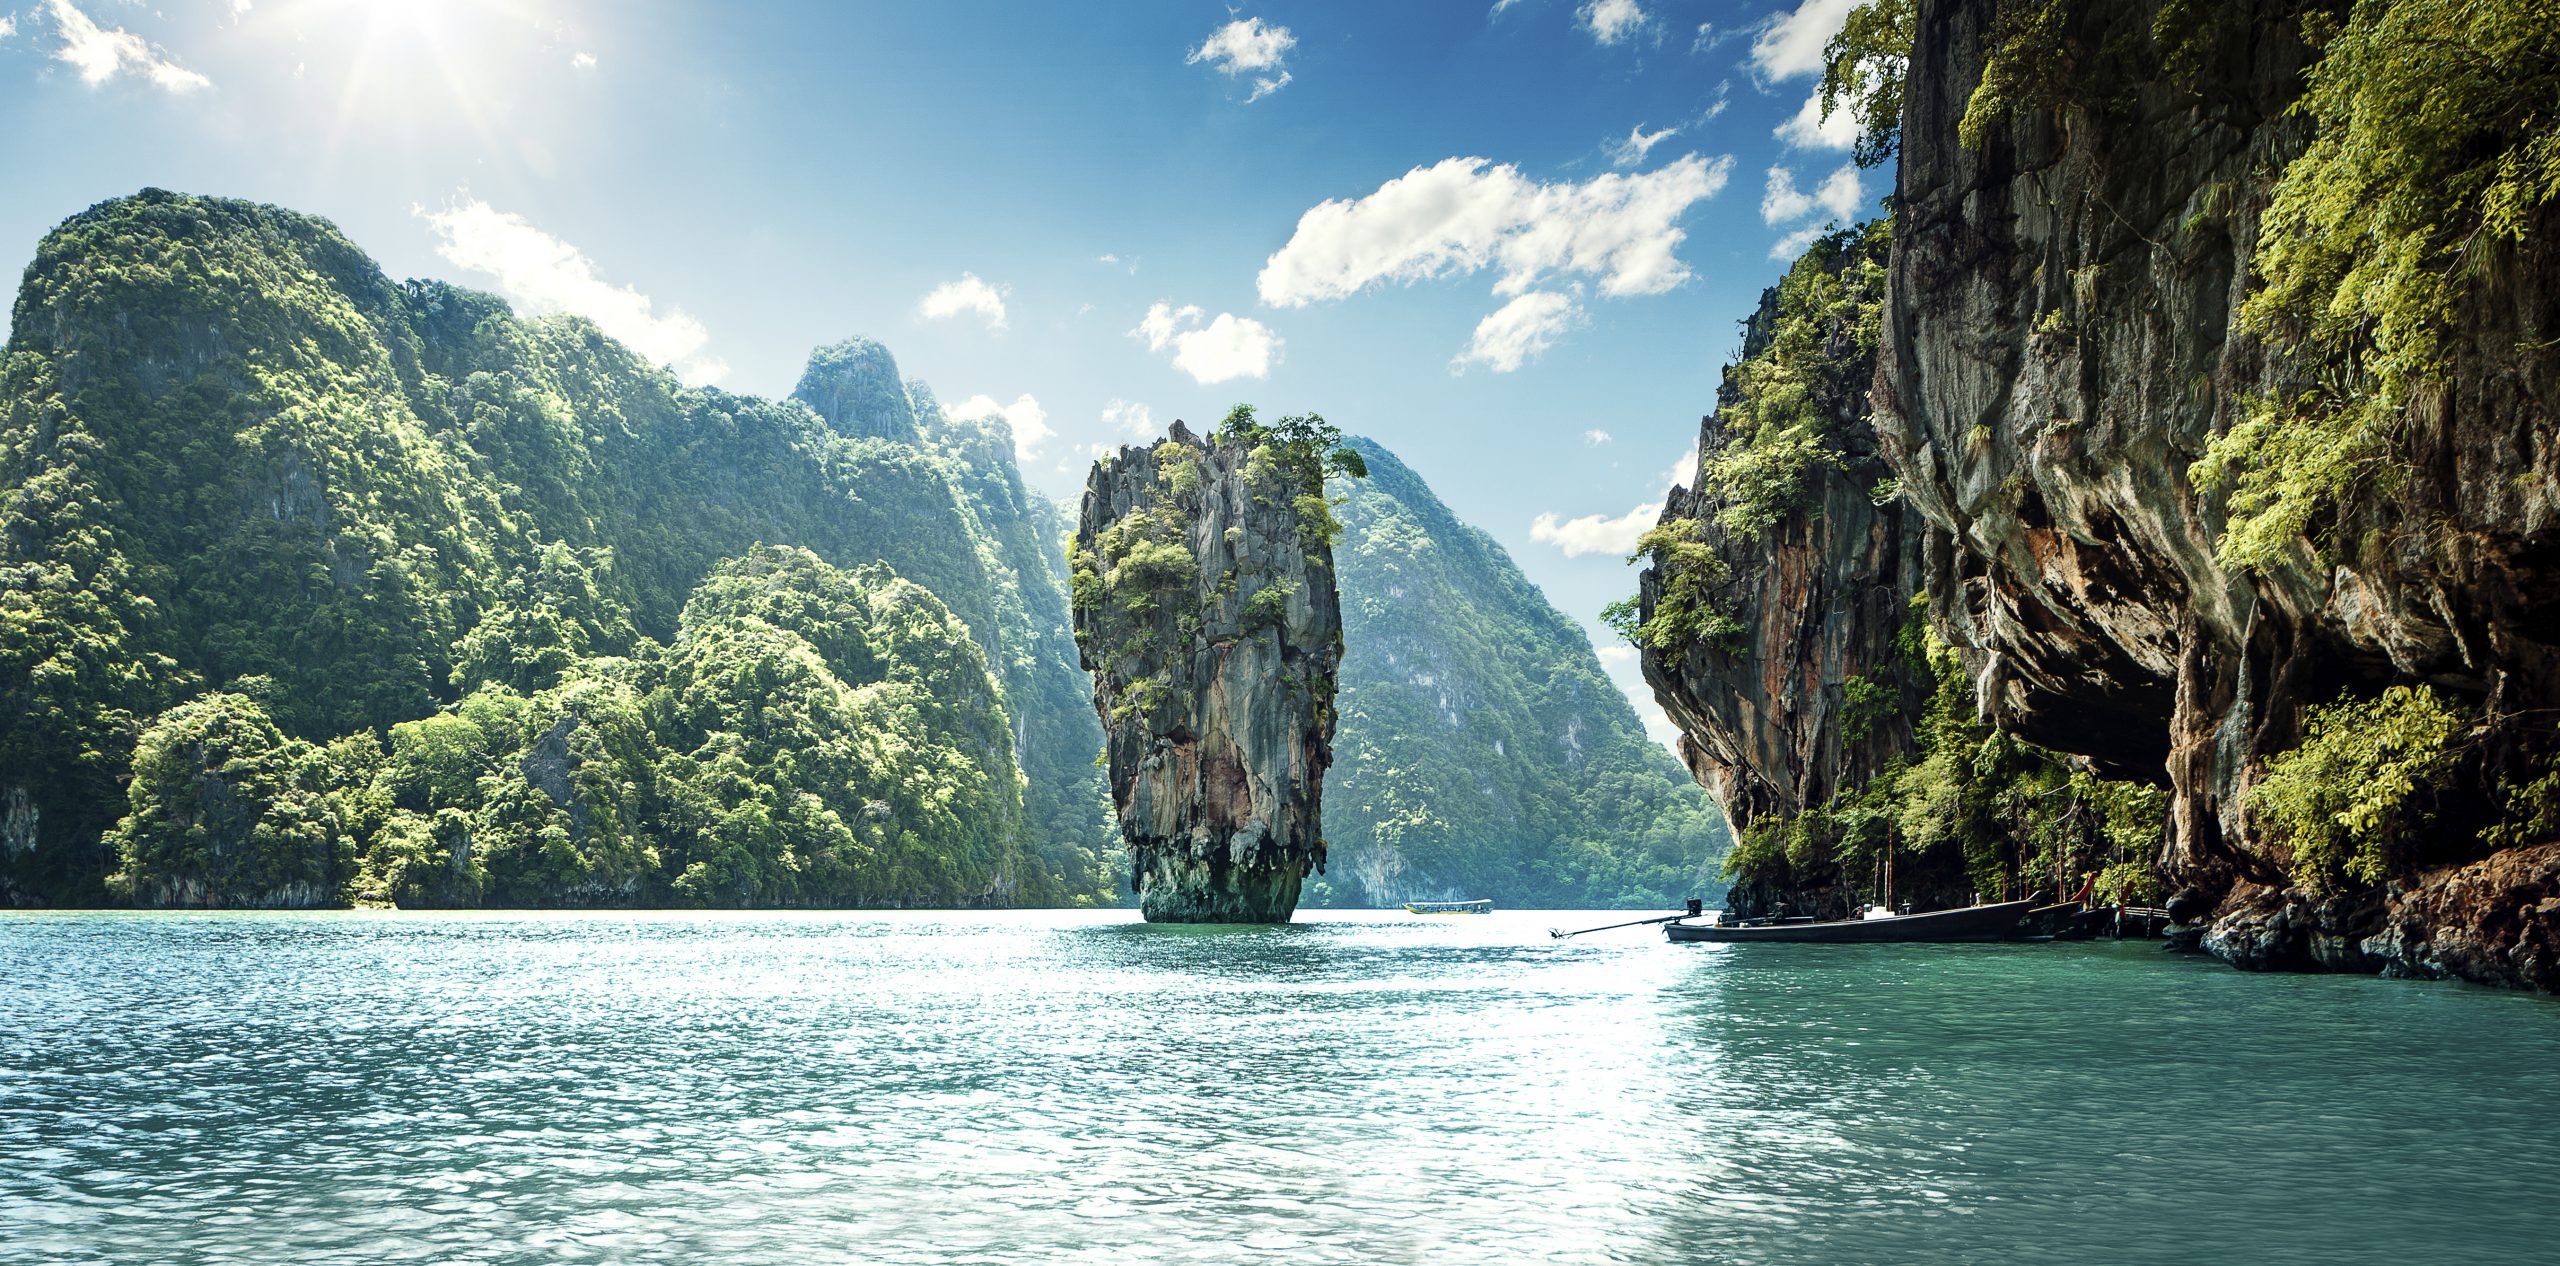 Auf diesem Bild sind die James-Bond-Inseln von Phuket ersichtlich